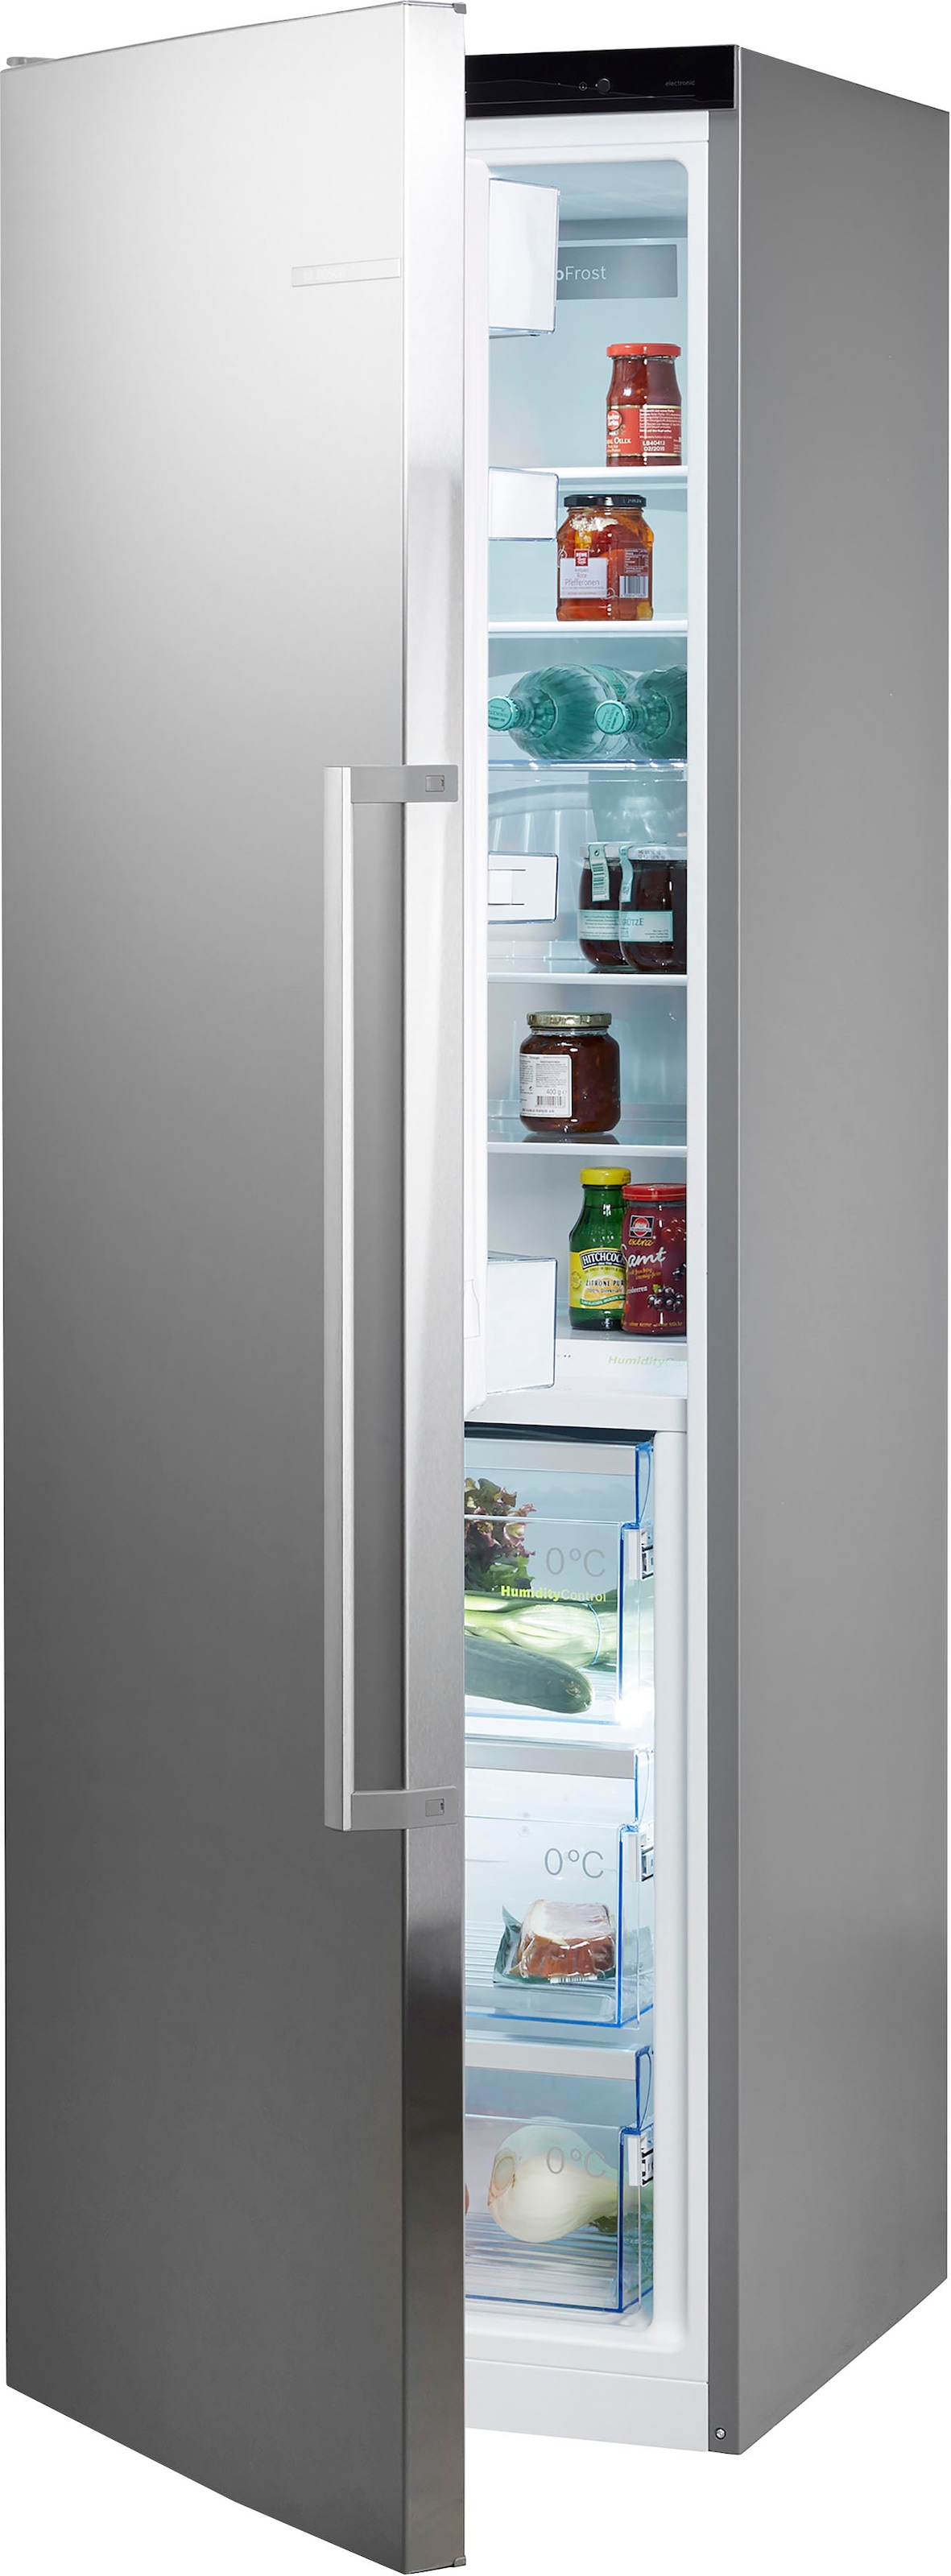 BOSCH Kühlschrank "KSF36PIDP", KSF36PIDP, 186 cm hoch, 60 cm breit